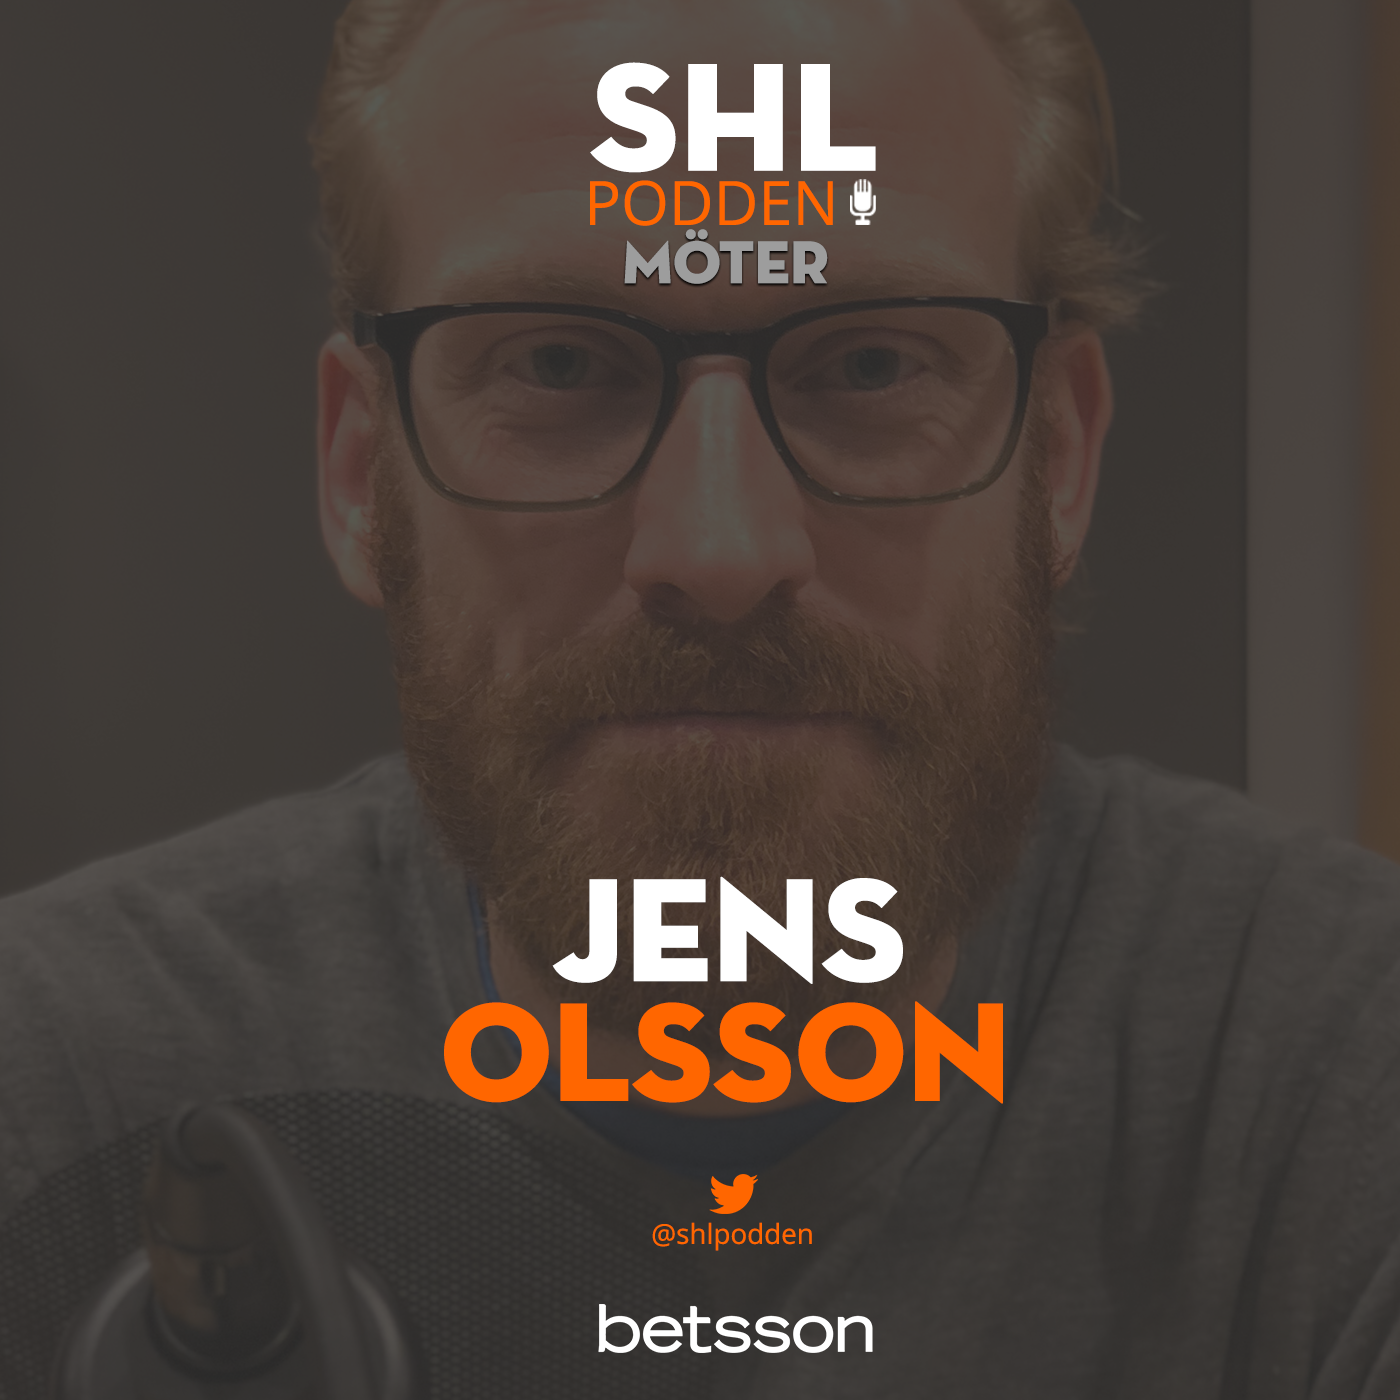 SHL-podden möter Jens Olsson